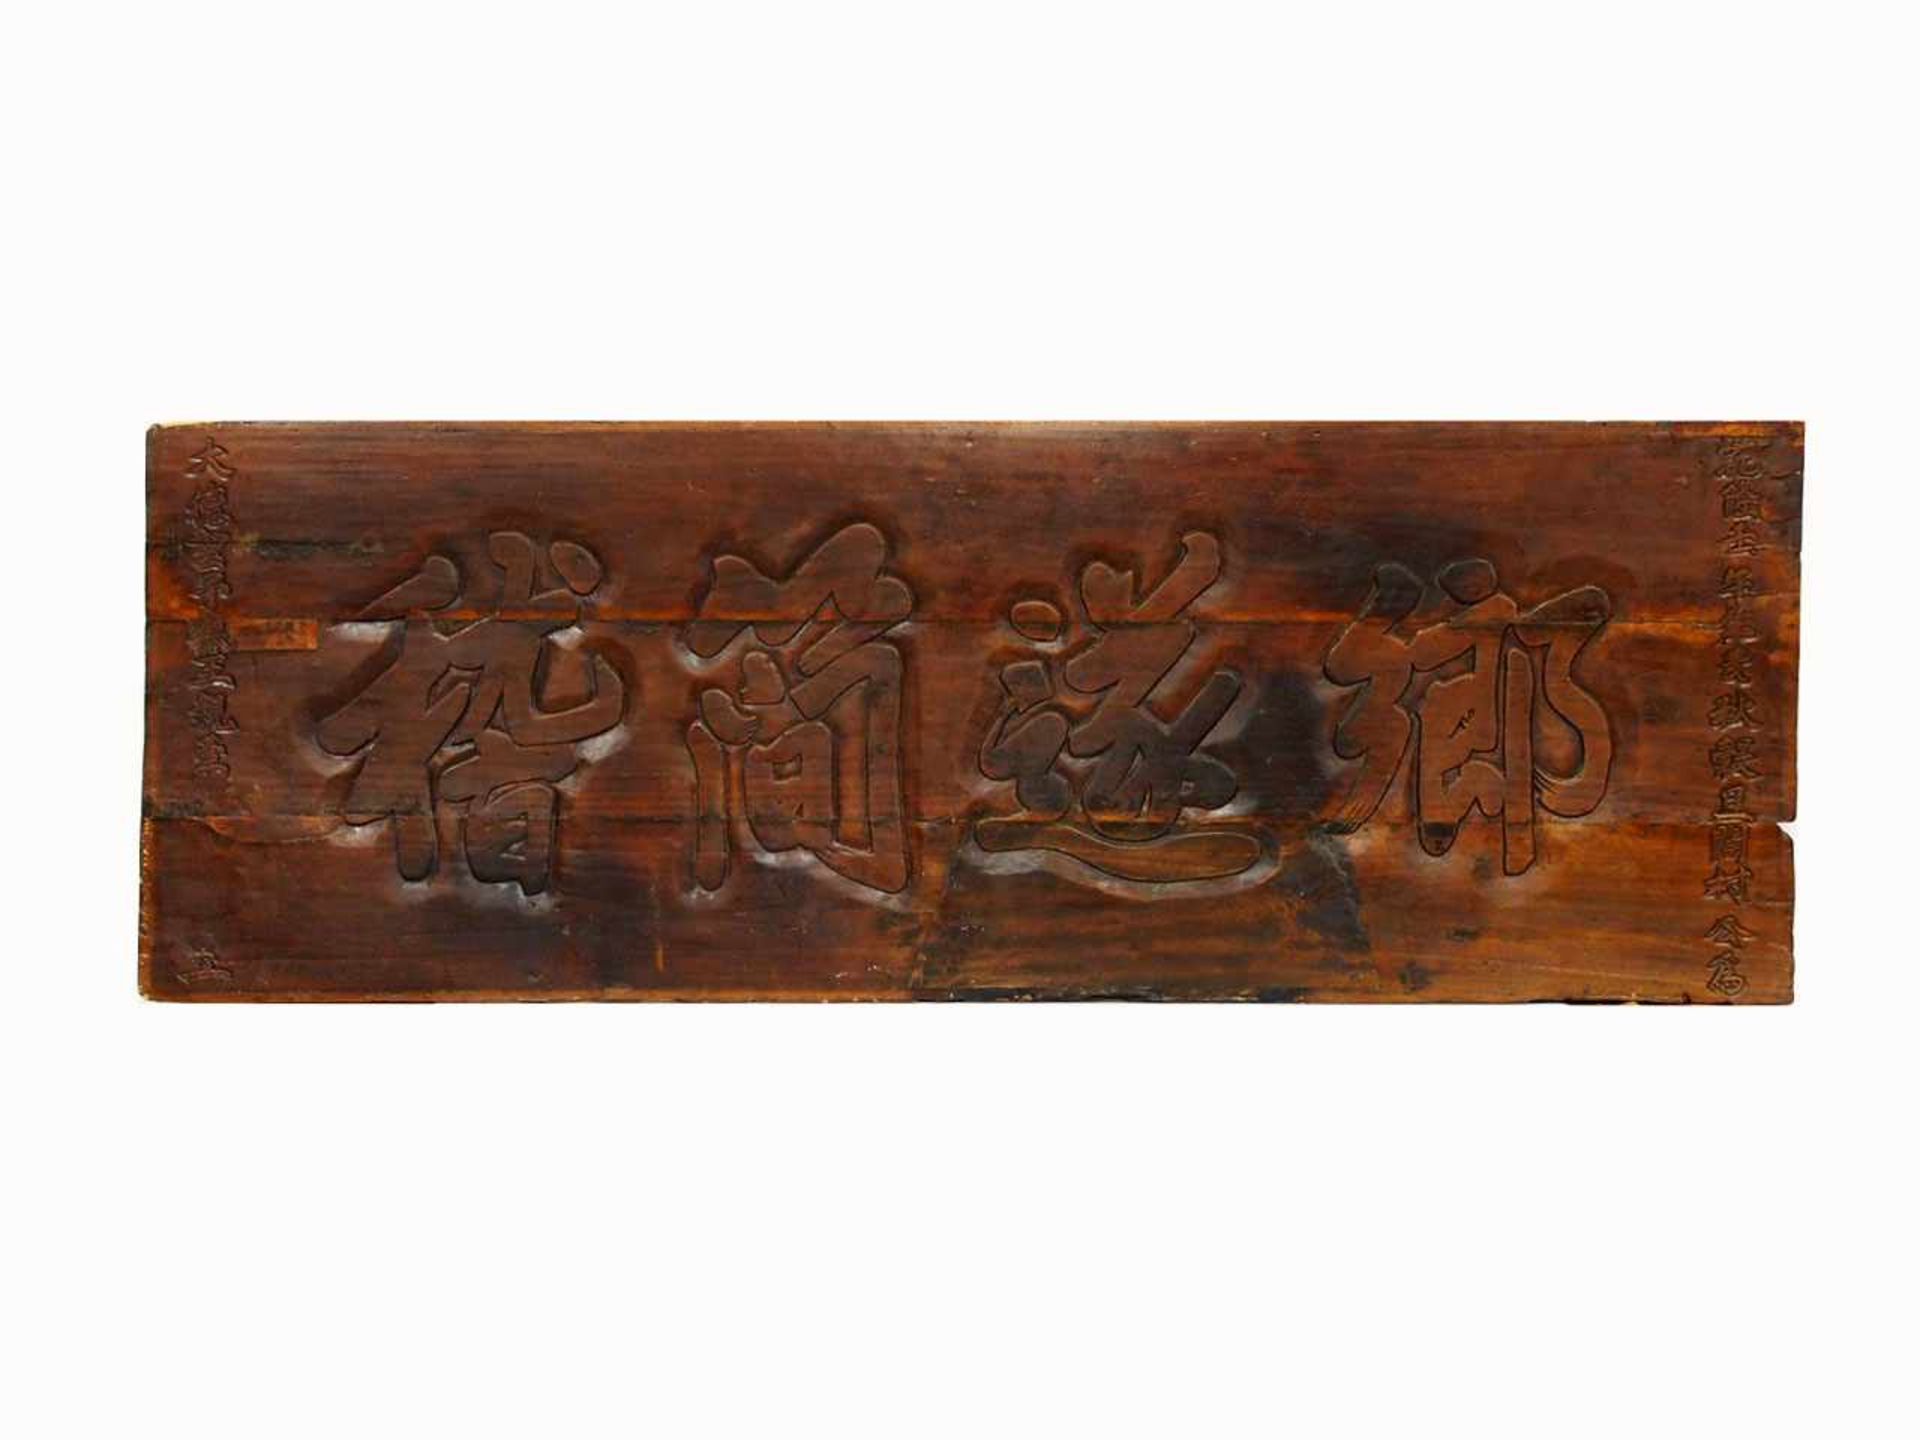 Ladenschild (?)Inschriftenbrett, China, 17./18. Jh., Holz, geschnitzt, 65,5 x 185 cm- - -25.00 %